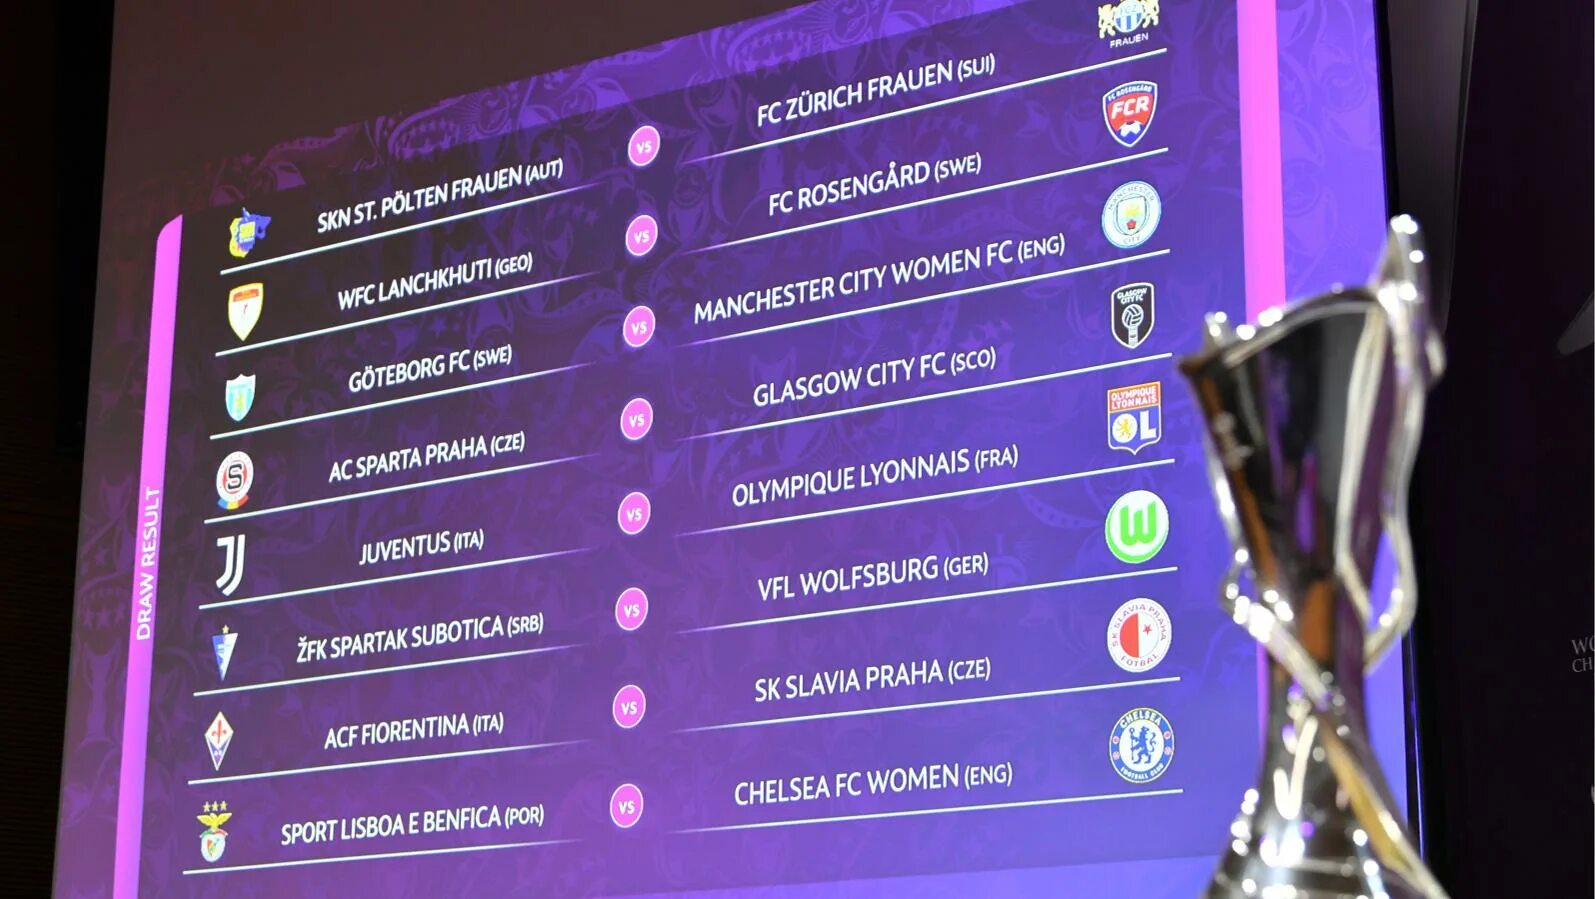 Лиги чемпионов уефа 2019. UEFA women's Champions League. Women’s Champions League 2020. UEFA women's Champions League 2021-22 draw. Лига чемпионов УЕФА 2019/2020.